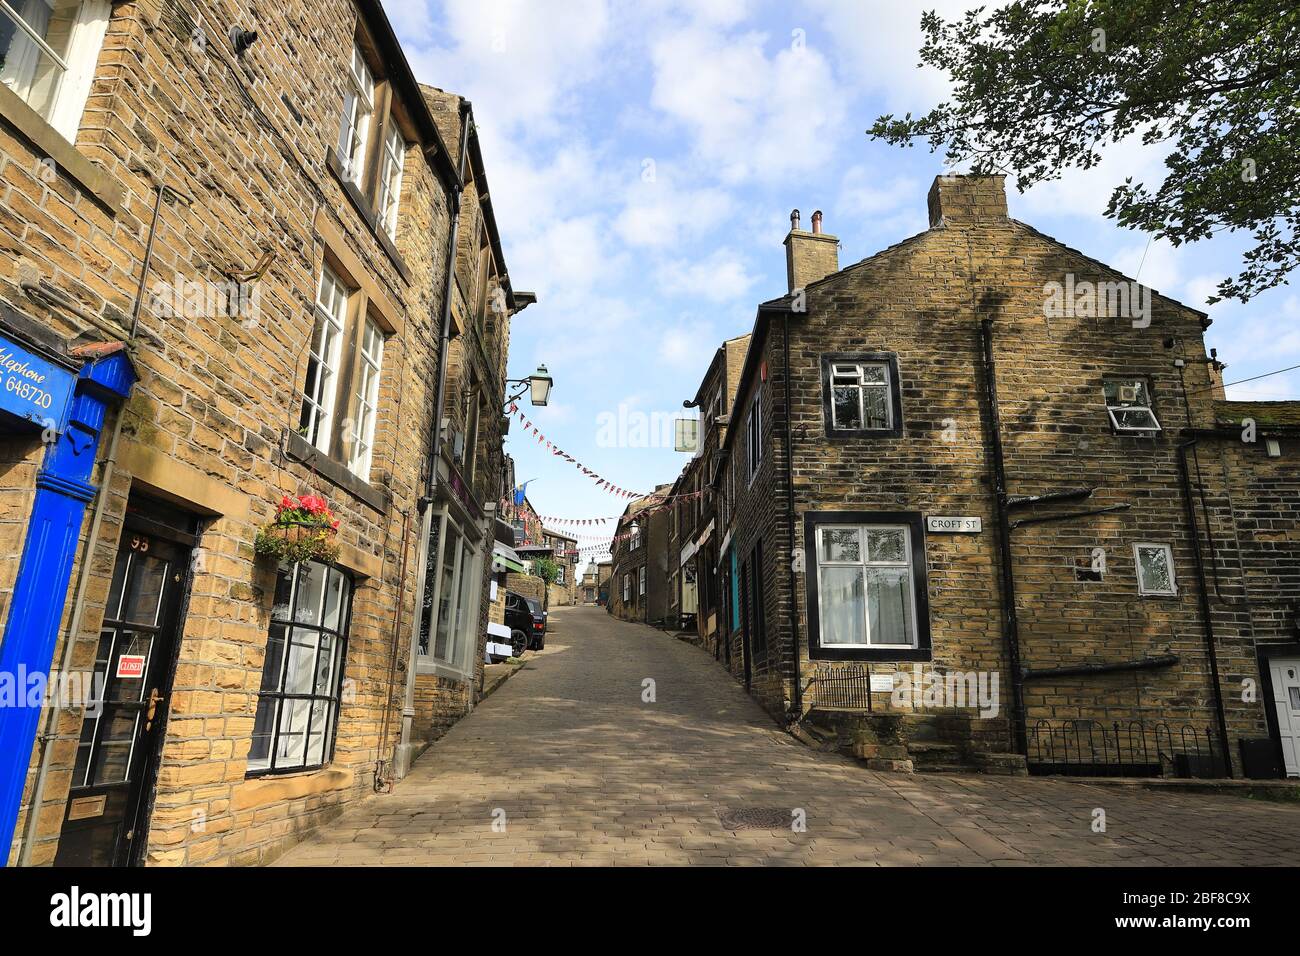 Die Aussicht auf die gepflasterte Hauptstraße in Haworth, West Yorkshire. Haworth war die Heimat der Bronte Schwestern und ist ein beliebtes Touristenziel. Stockfoto